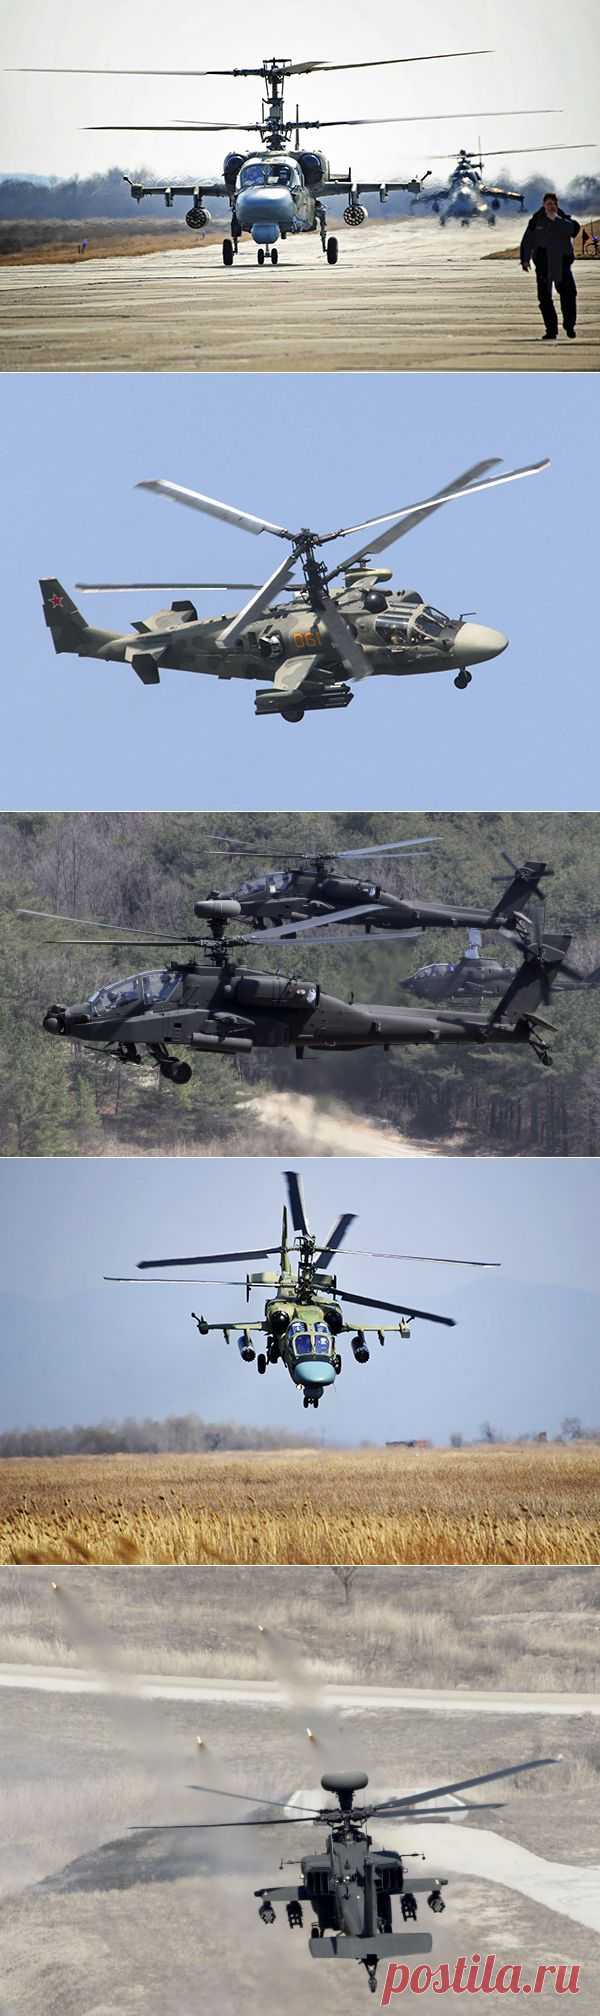 Воздушные бои: Ка-52 "Аллигатор" против AH-64 Apache — Илья Щеголев — Российская газета